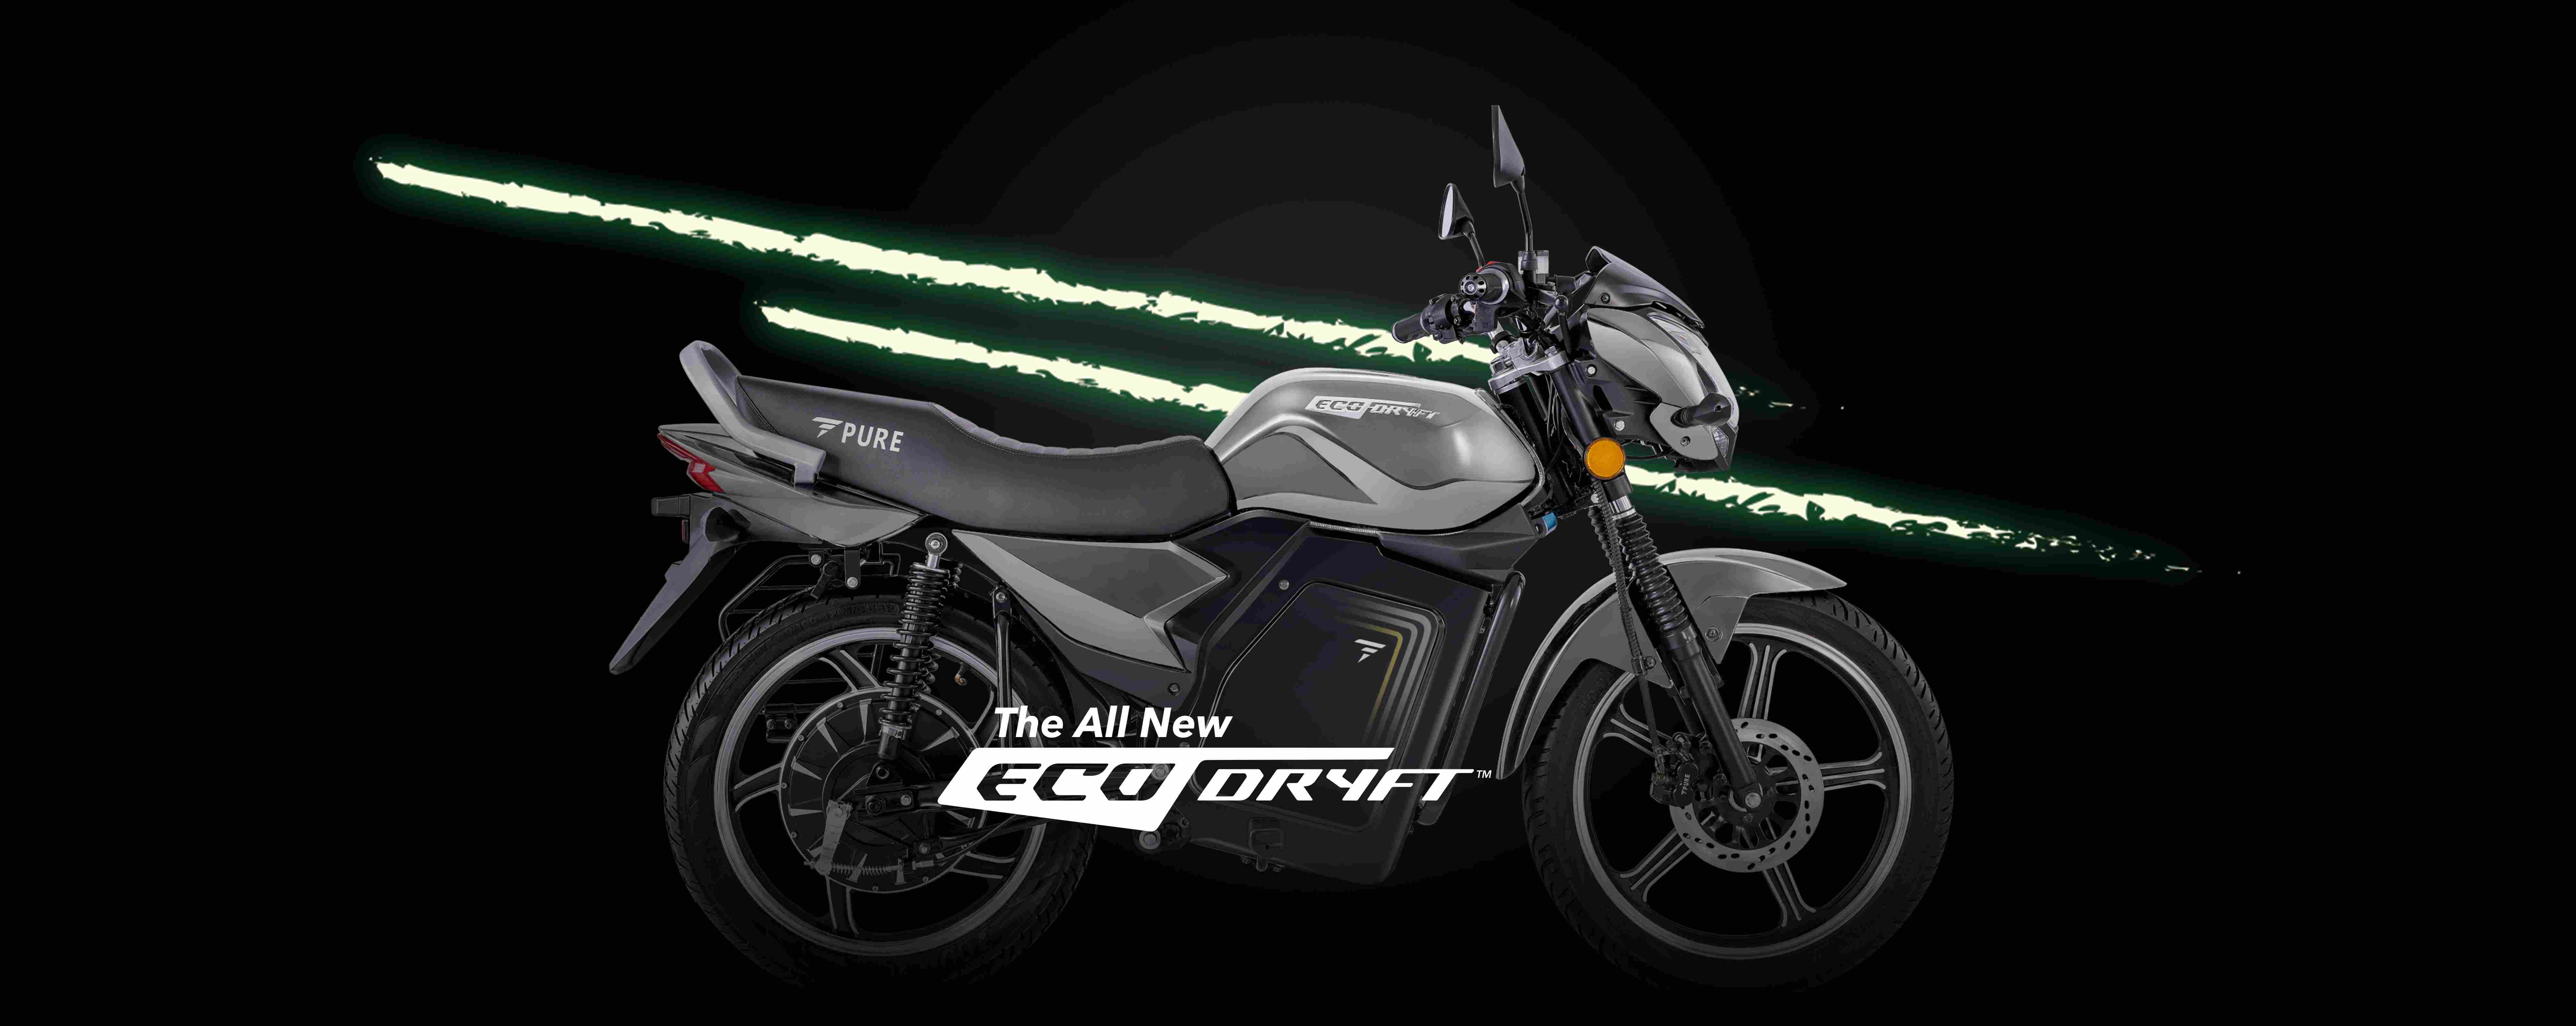 Pure EV ecoDryft - Silver